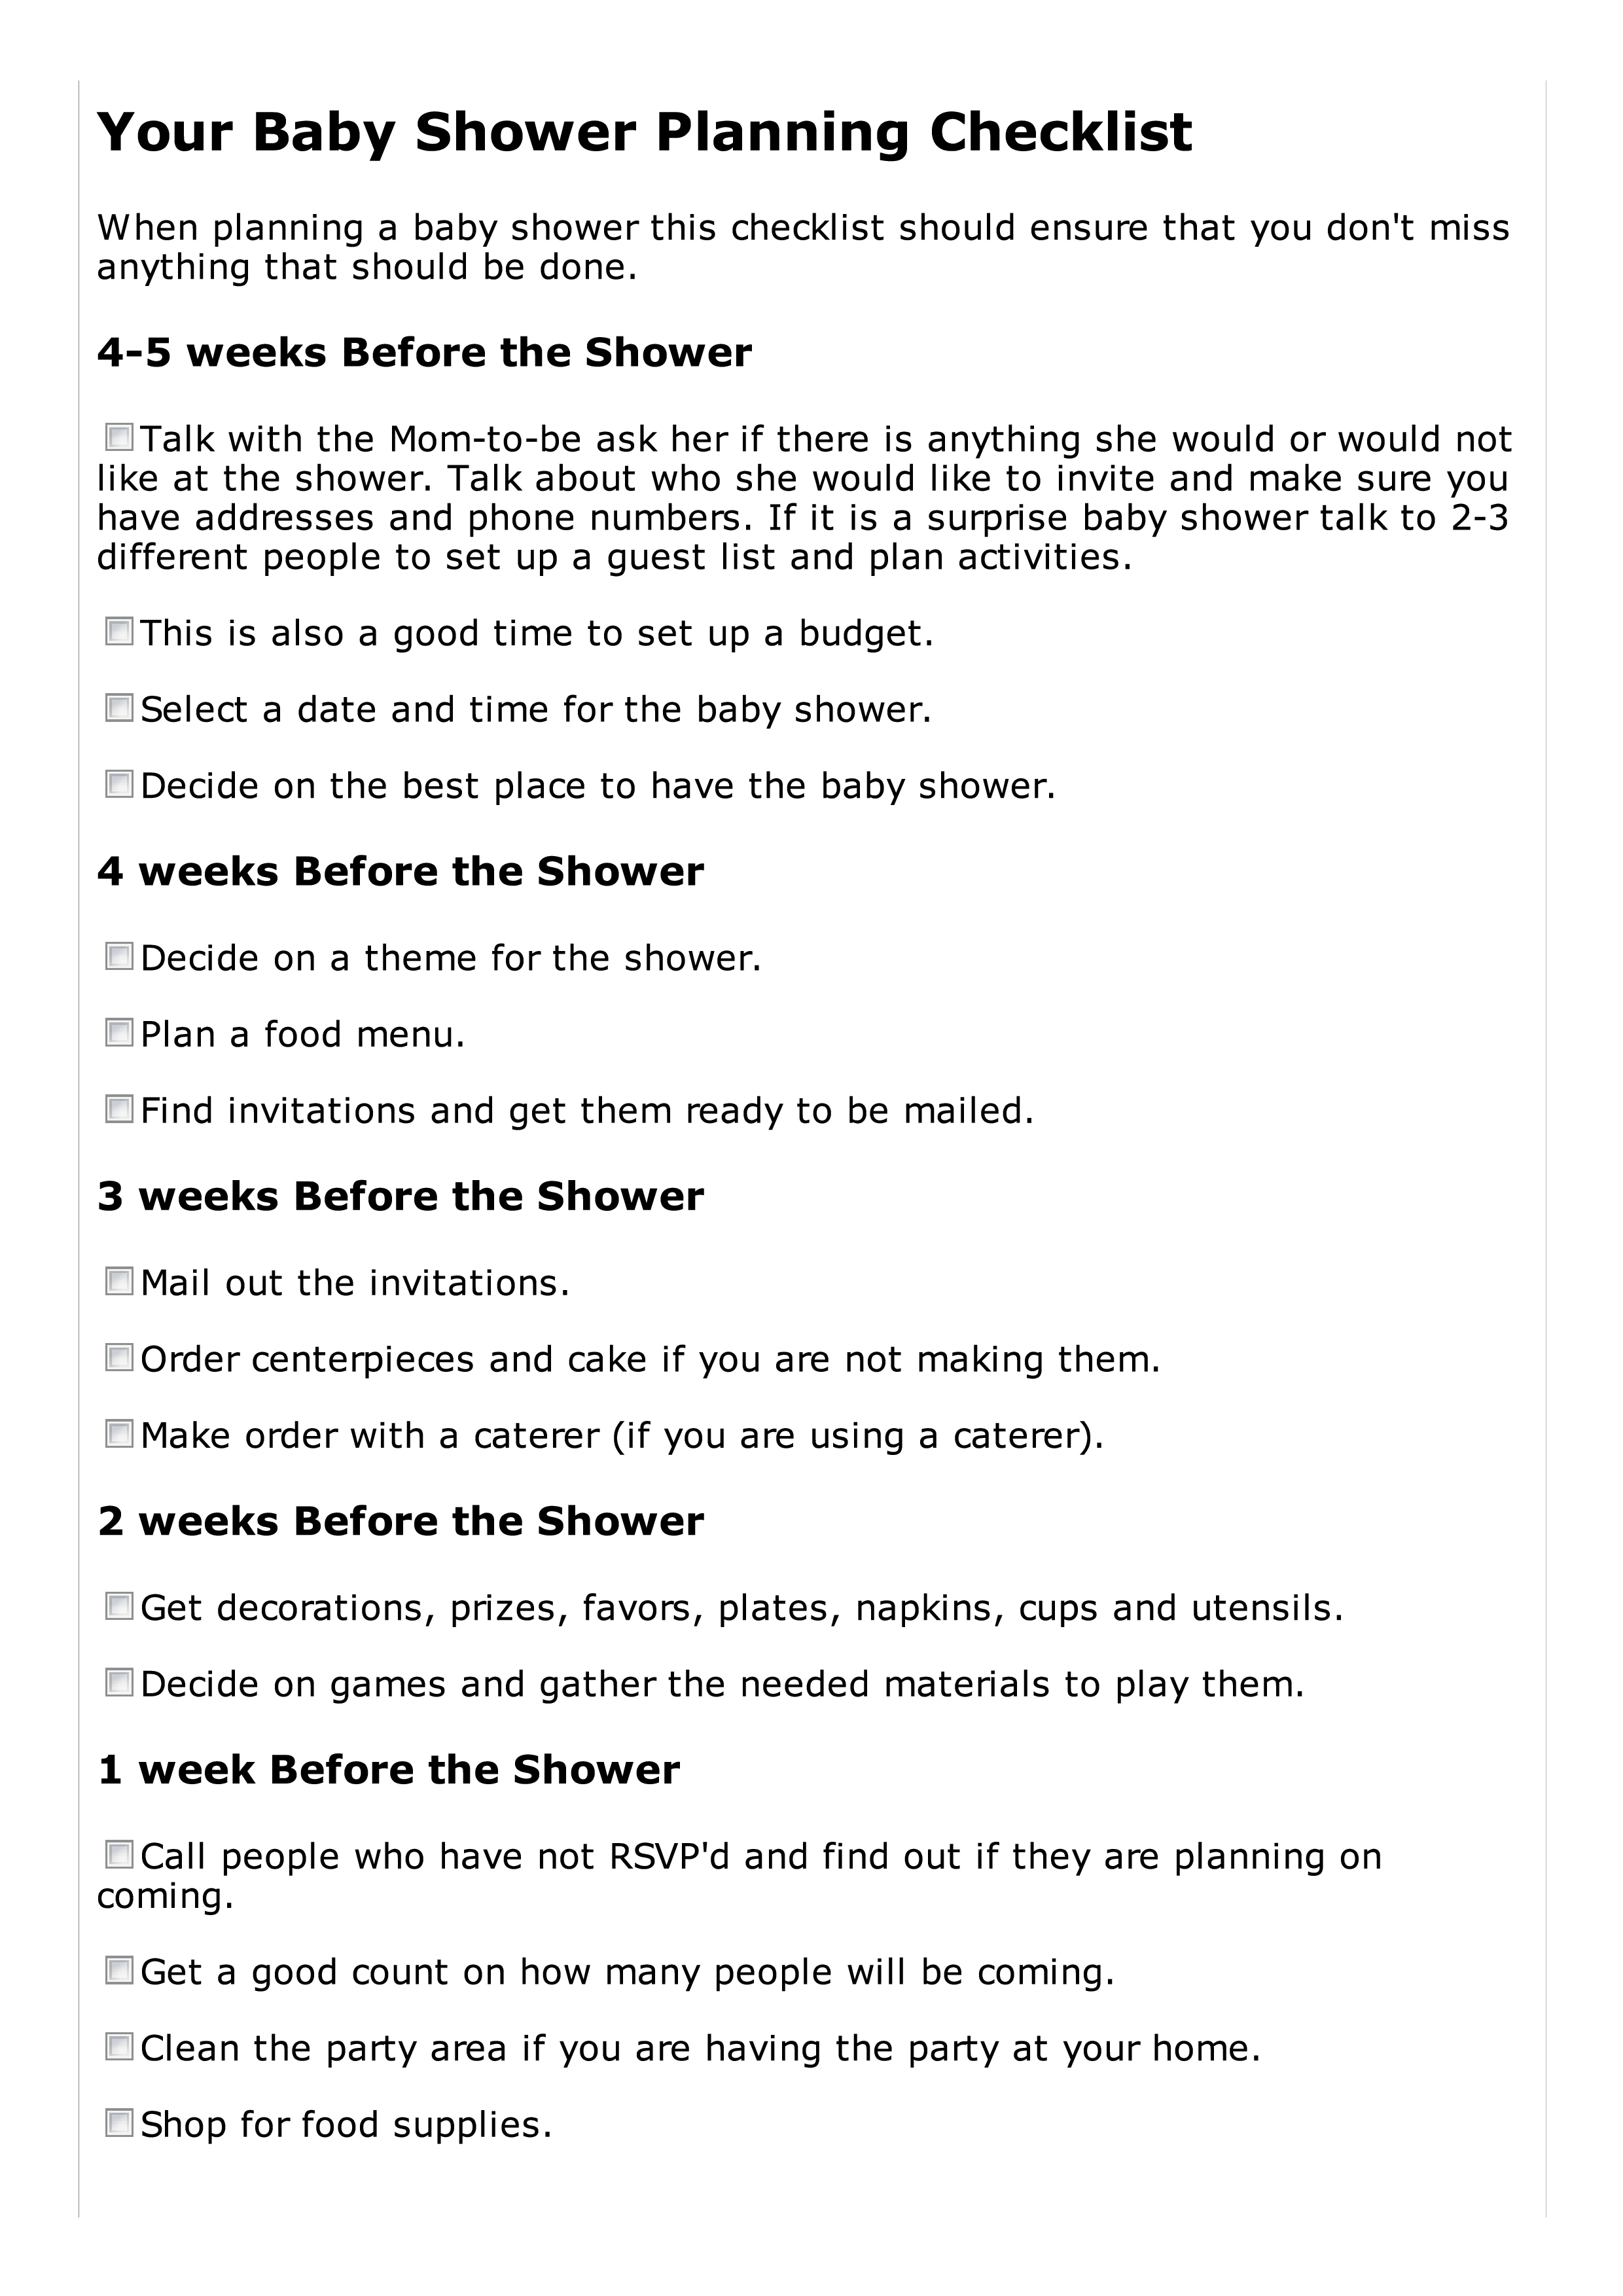 Baby Shower Planning Checklist 模板